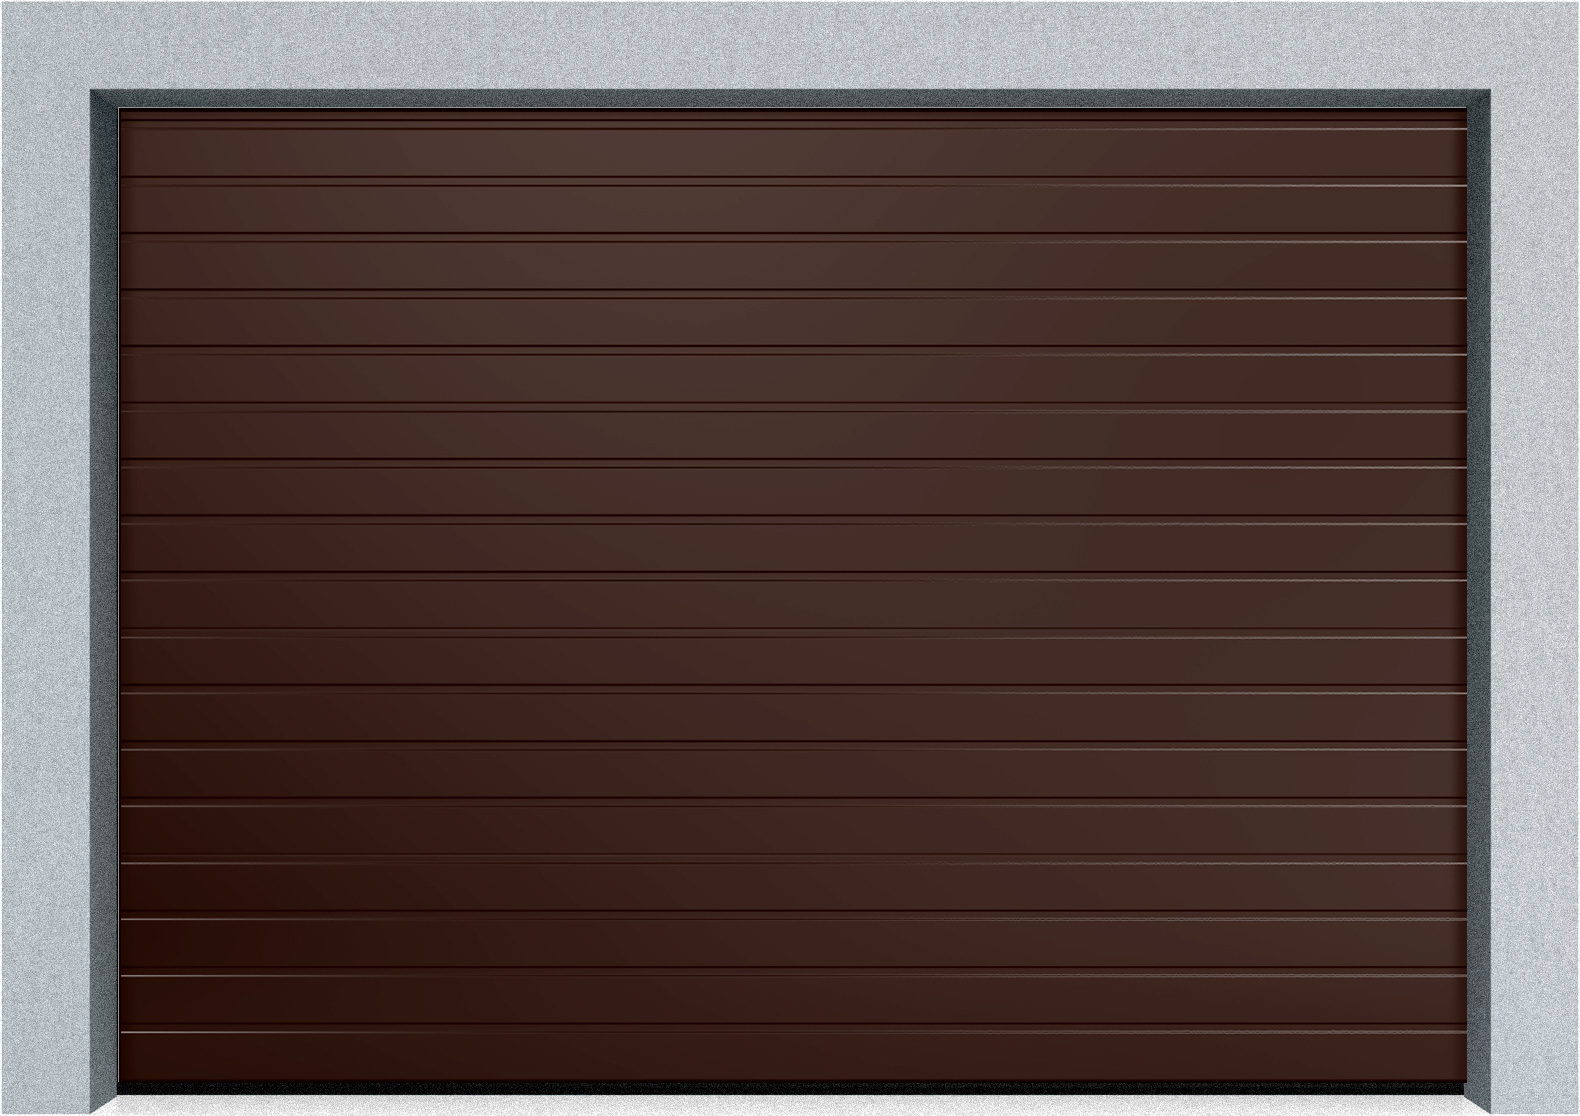  Автоматические секционные промышленные ворота DoorHan ISD ThermalPro 2300x3700 S-гофр, M-гофр, Микроволна стандартные цвета, фото 3 